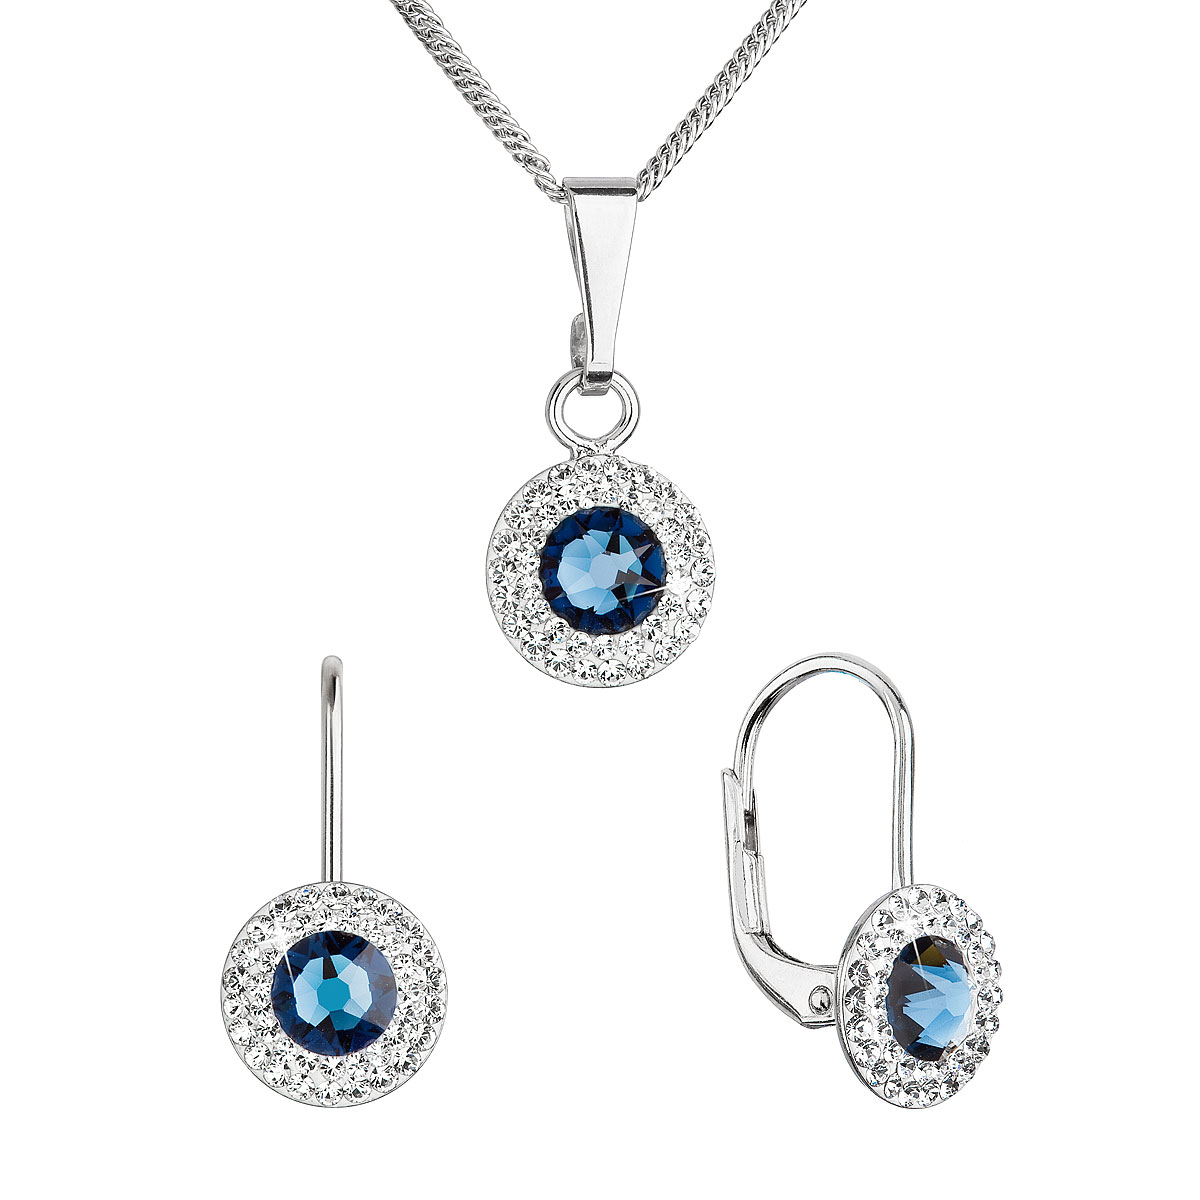 Evolution Group Sada šperků s krystaly Swarovski náušnice a přívěsek tmavě modré kulaté 39109.3 montana